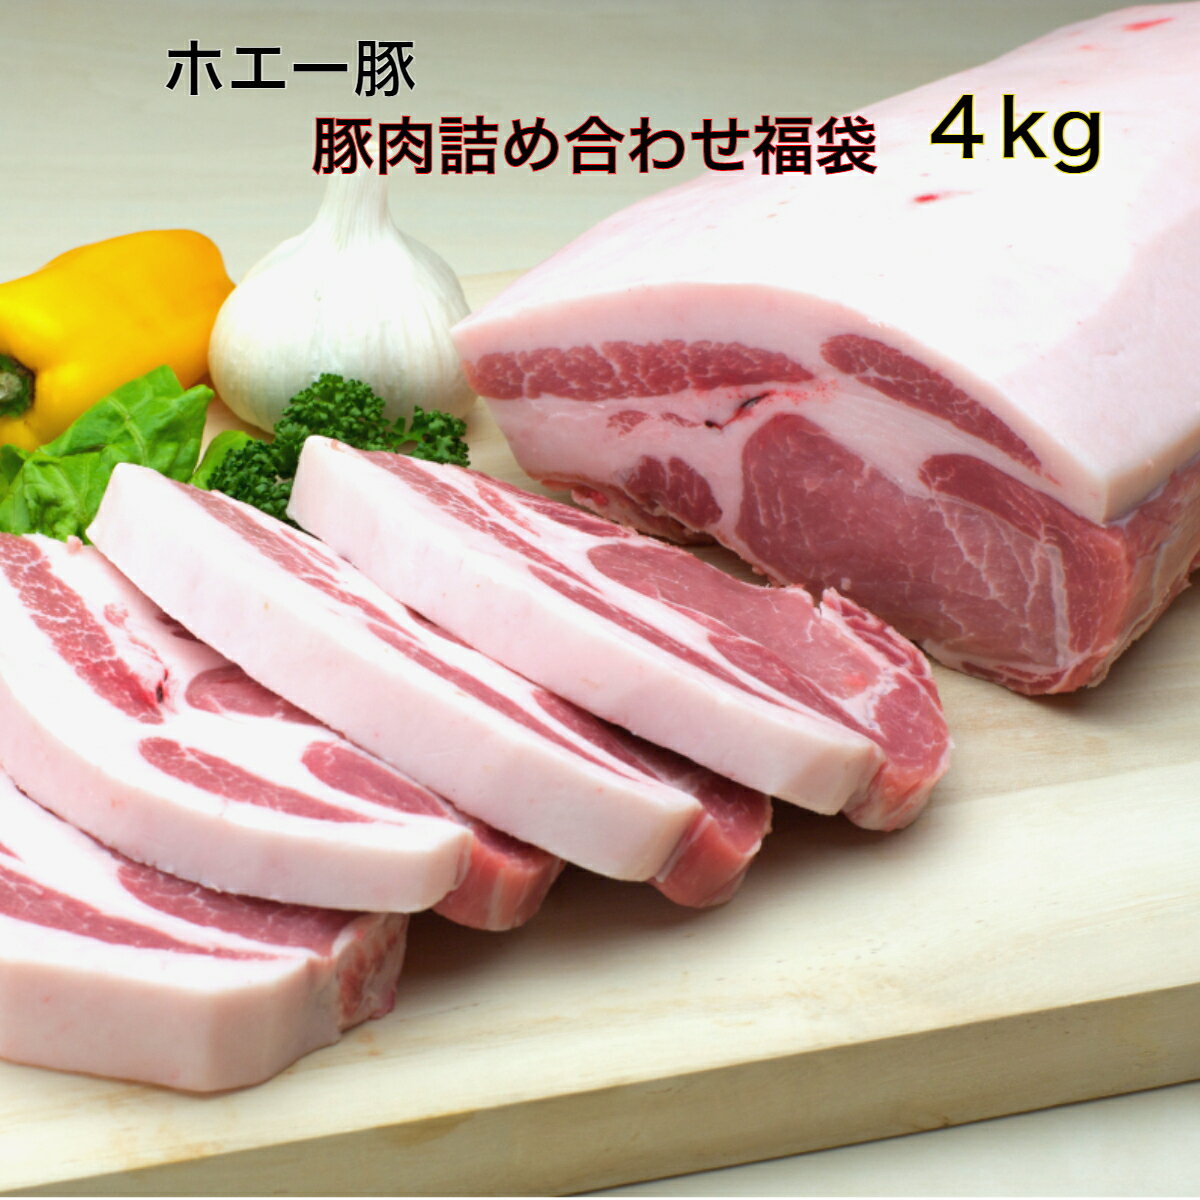 【スーパーセール特価】 十勝 ホエー豚 豚肉 詰め合わせ セ